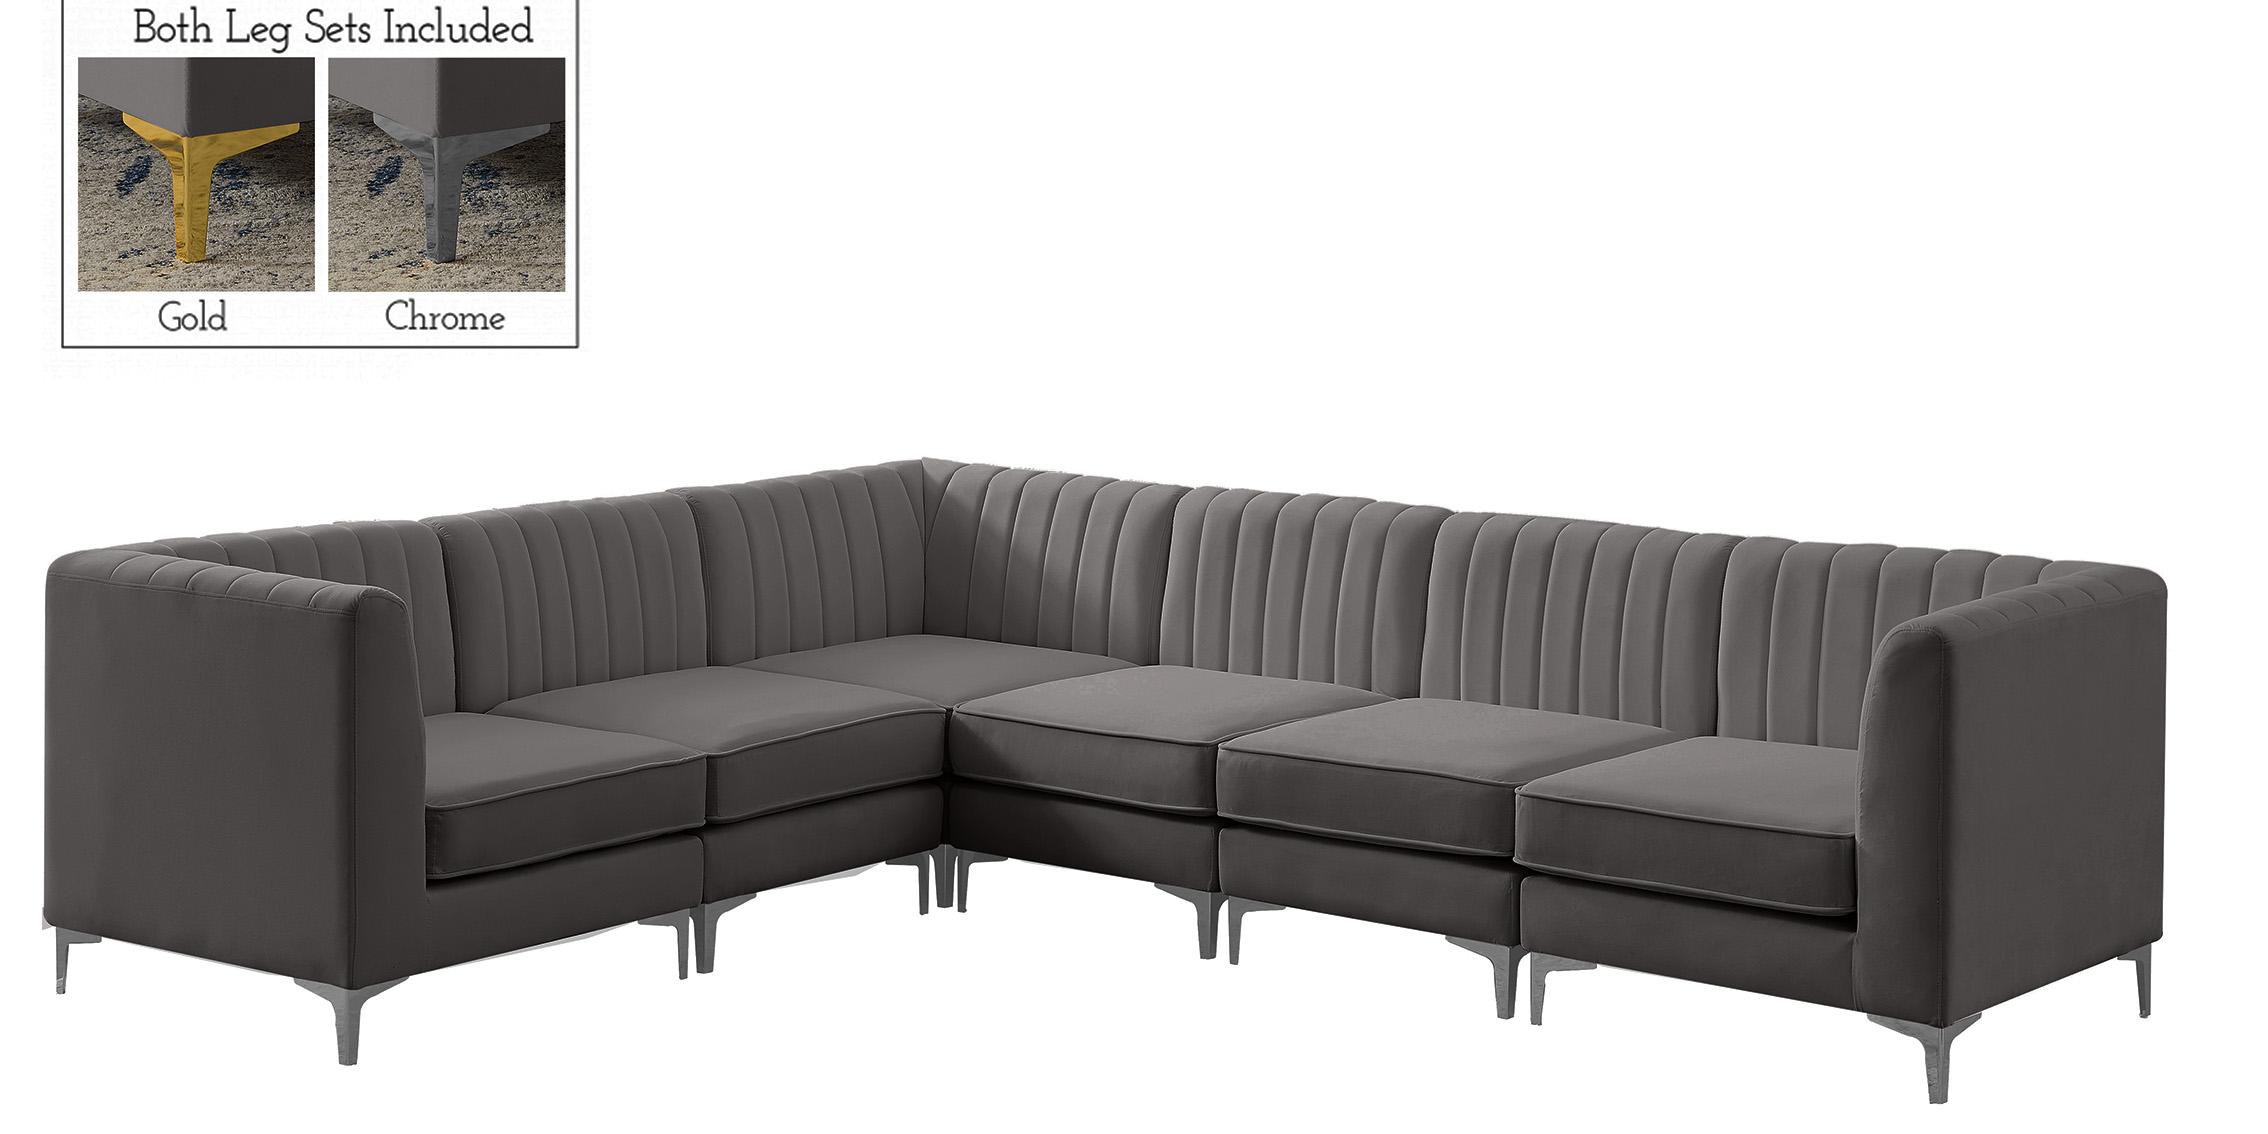 

    
Meridian Furniture ALINA 604Grey-Sec6A Modular Sectional Sofa Gray 604Grey-Sec6A
